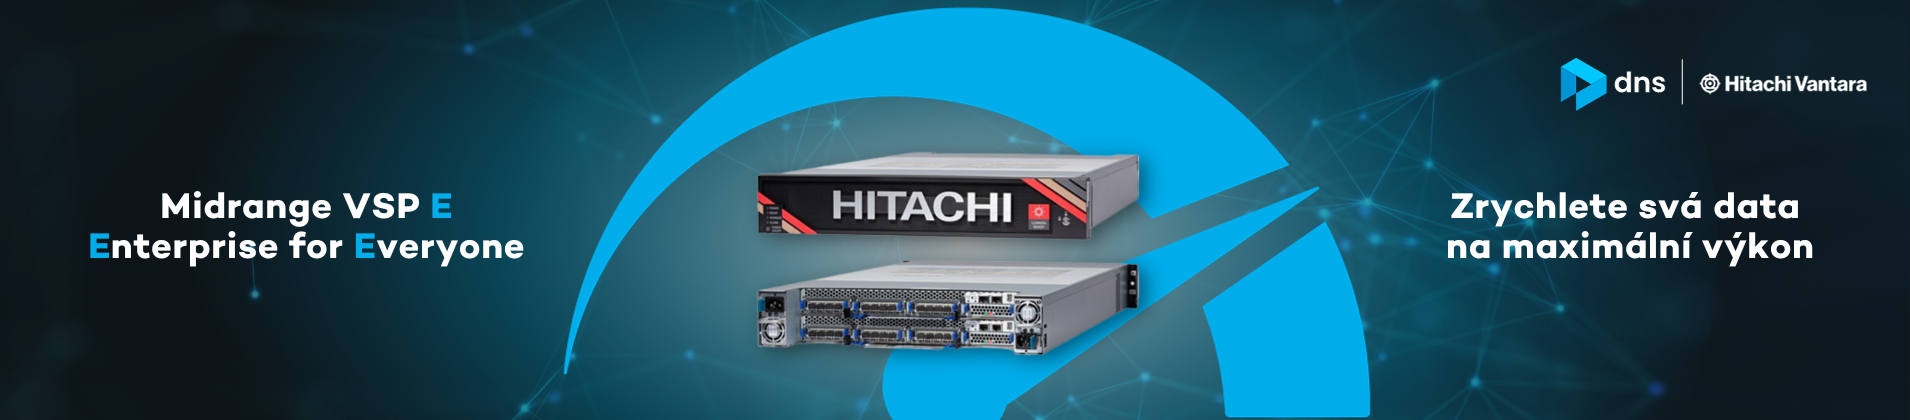 Zrychlete svá data díky prodloužené akci na disková pole Hitachi!